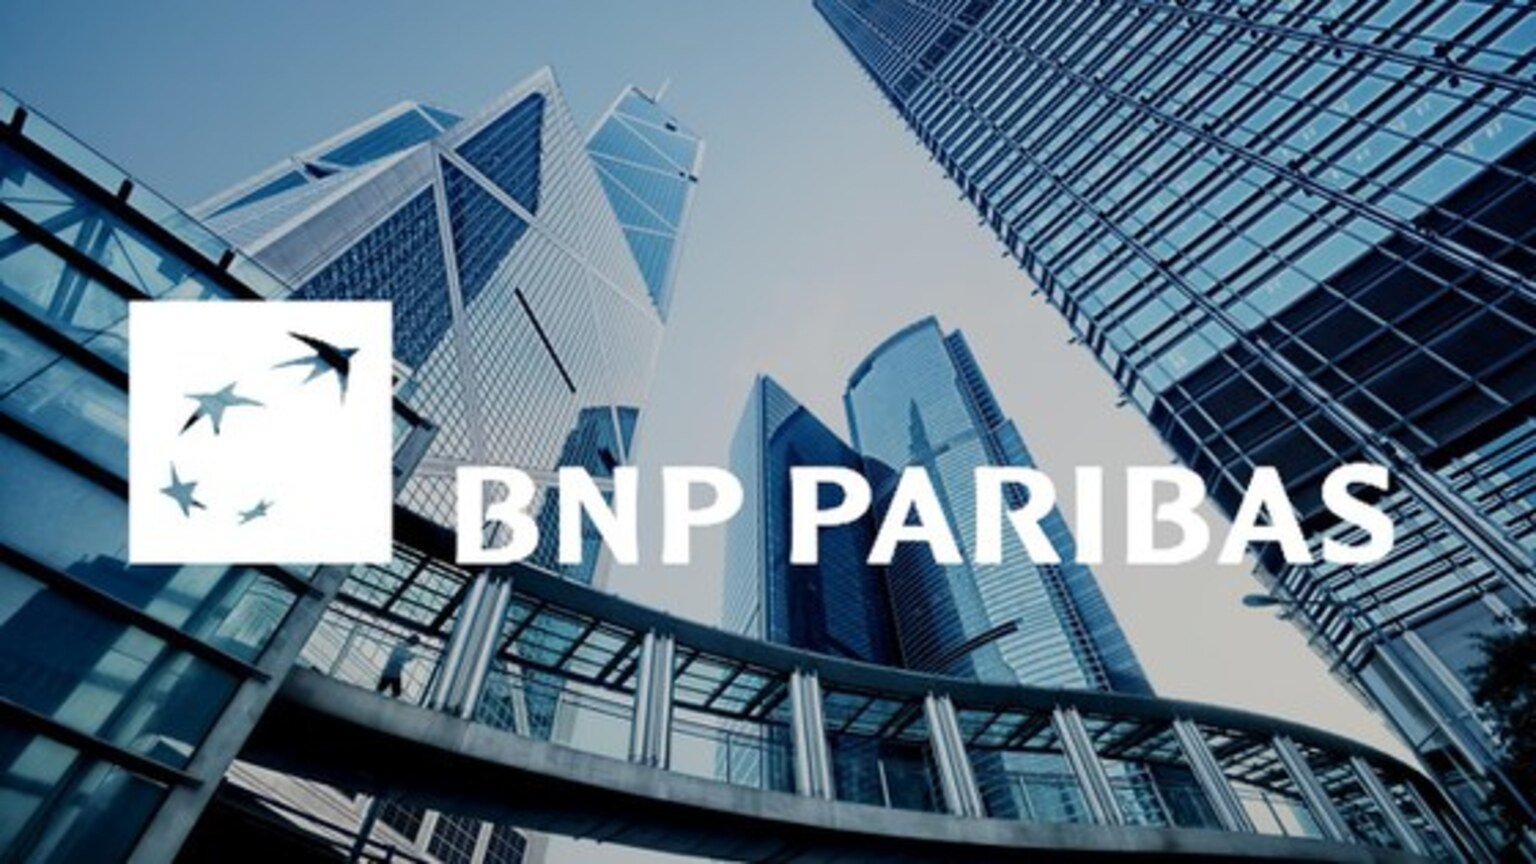 bnp-paribas-cch-tagetiks-financial-platform